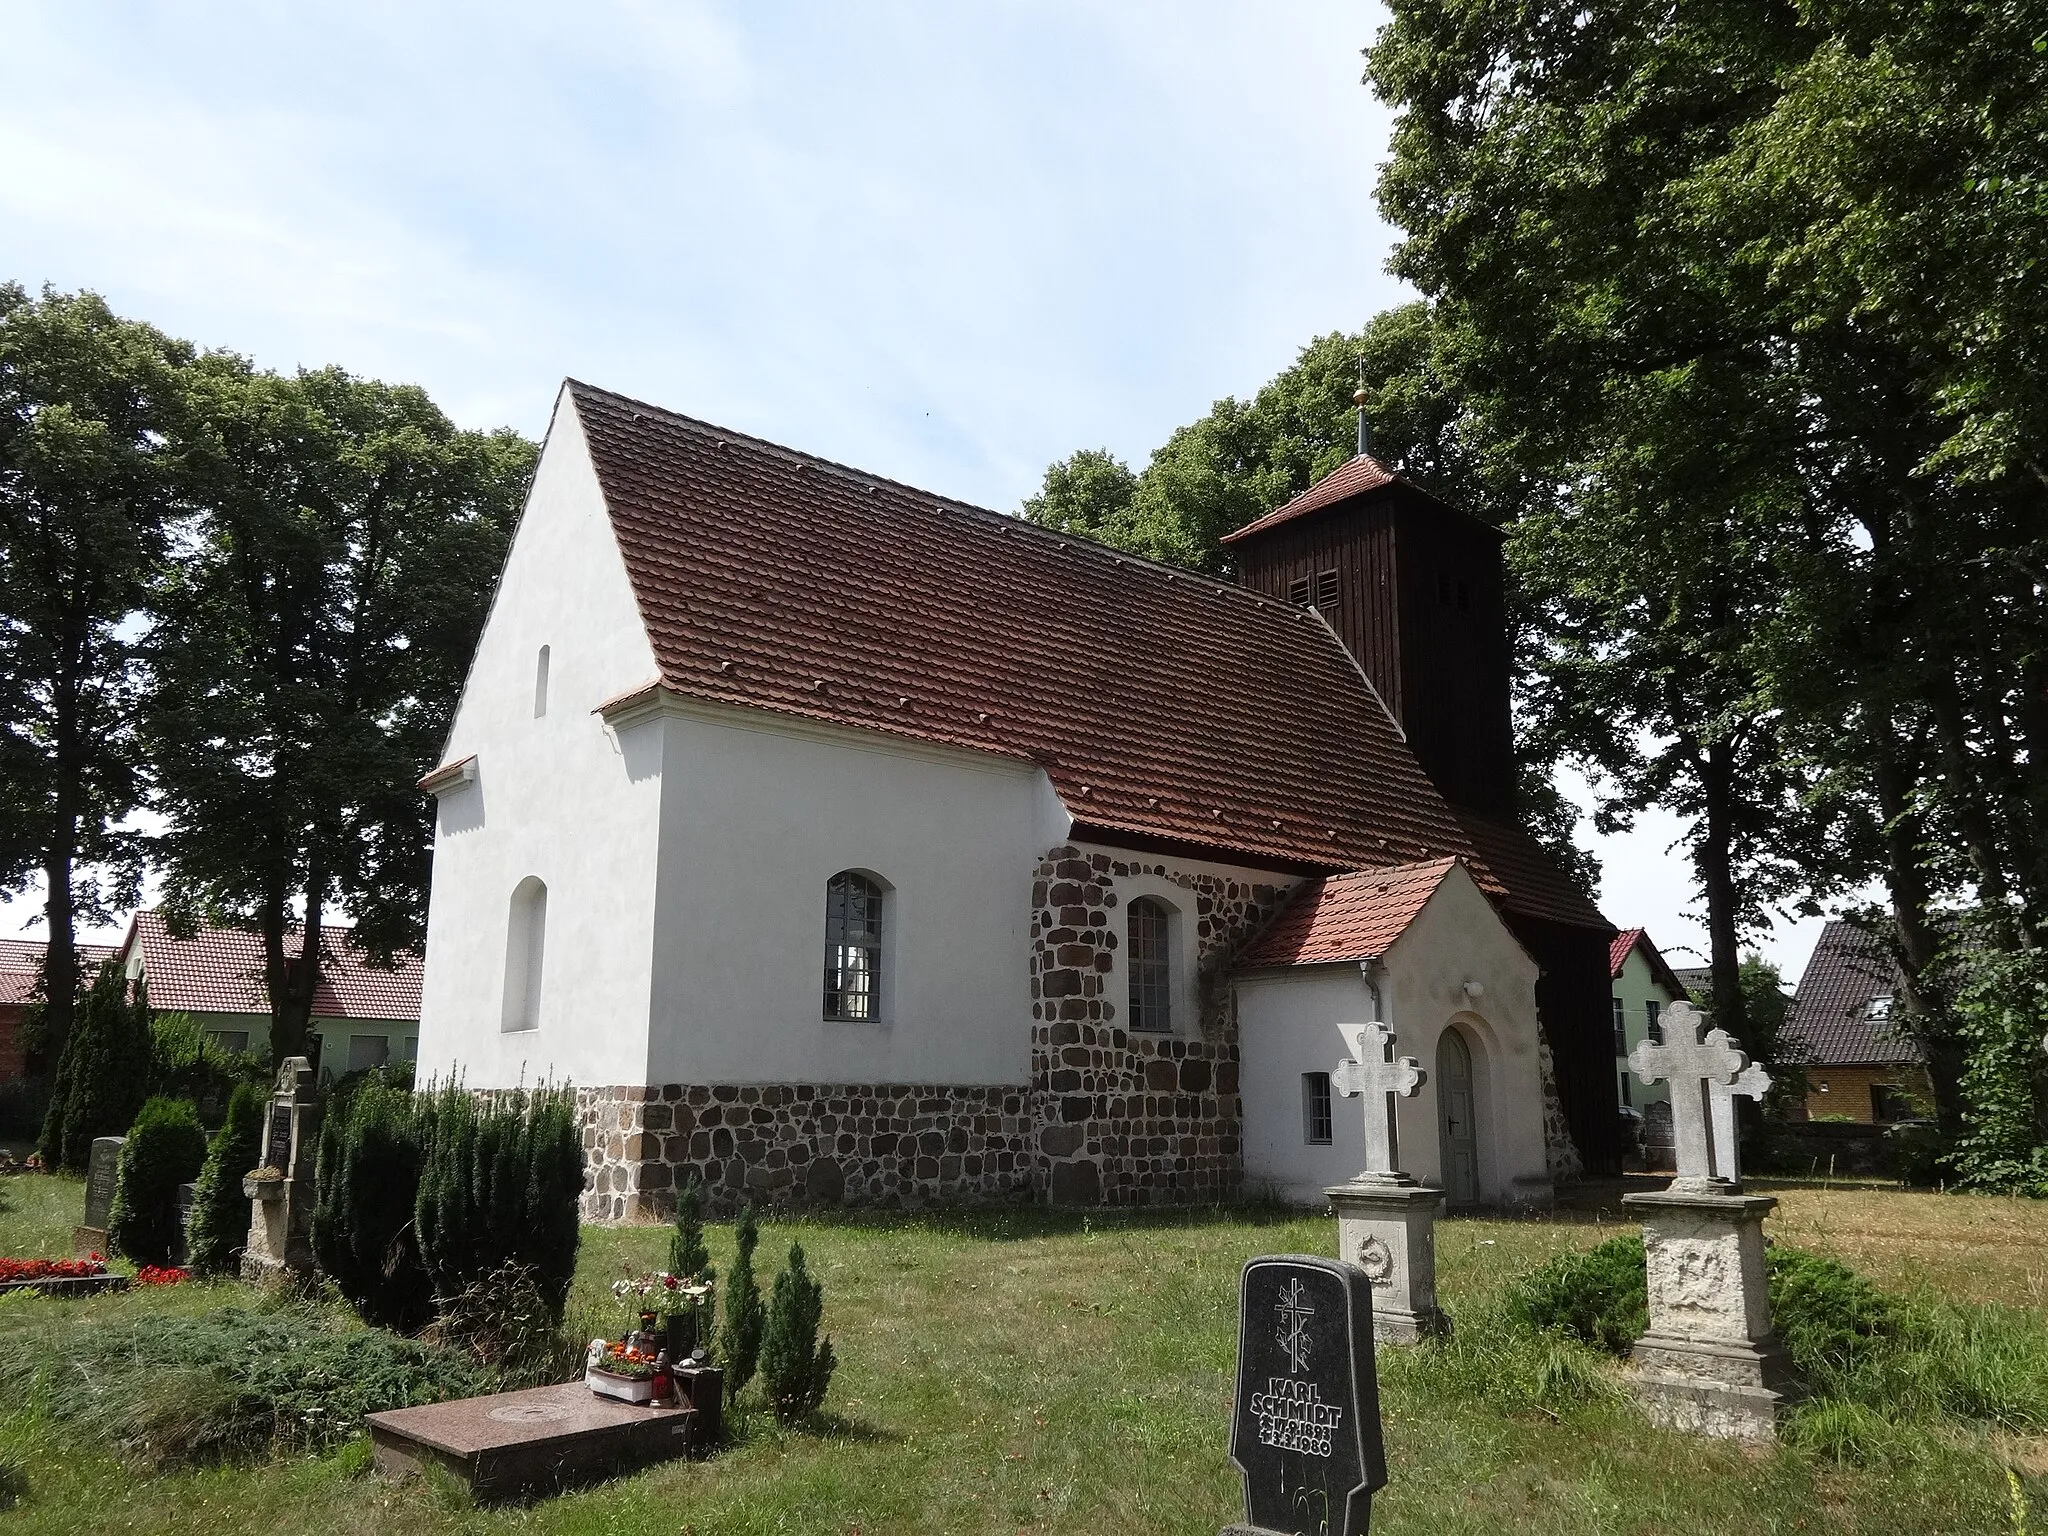 Photo showing: Die Dorfkirche in Schönefeld ist eine Feldsteinkirche aus dem 13. Jahrhundert in Beelitz im Landkreis Potsdam-Mittelmark in Brandenburg. Sie wurde barock überformt und um einen Westturm ergänzt. Im Innern befinden sich ein Kanzelaltar aus dem Jahr 1715 sowie Reste mittelalterlicher Wandmalereien.